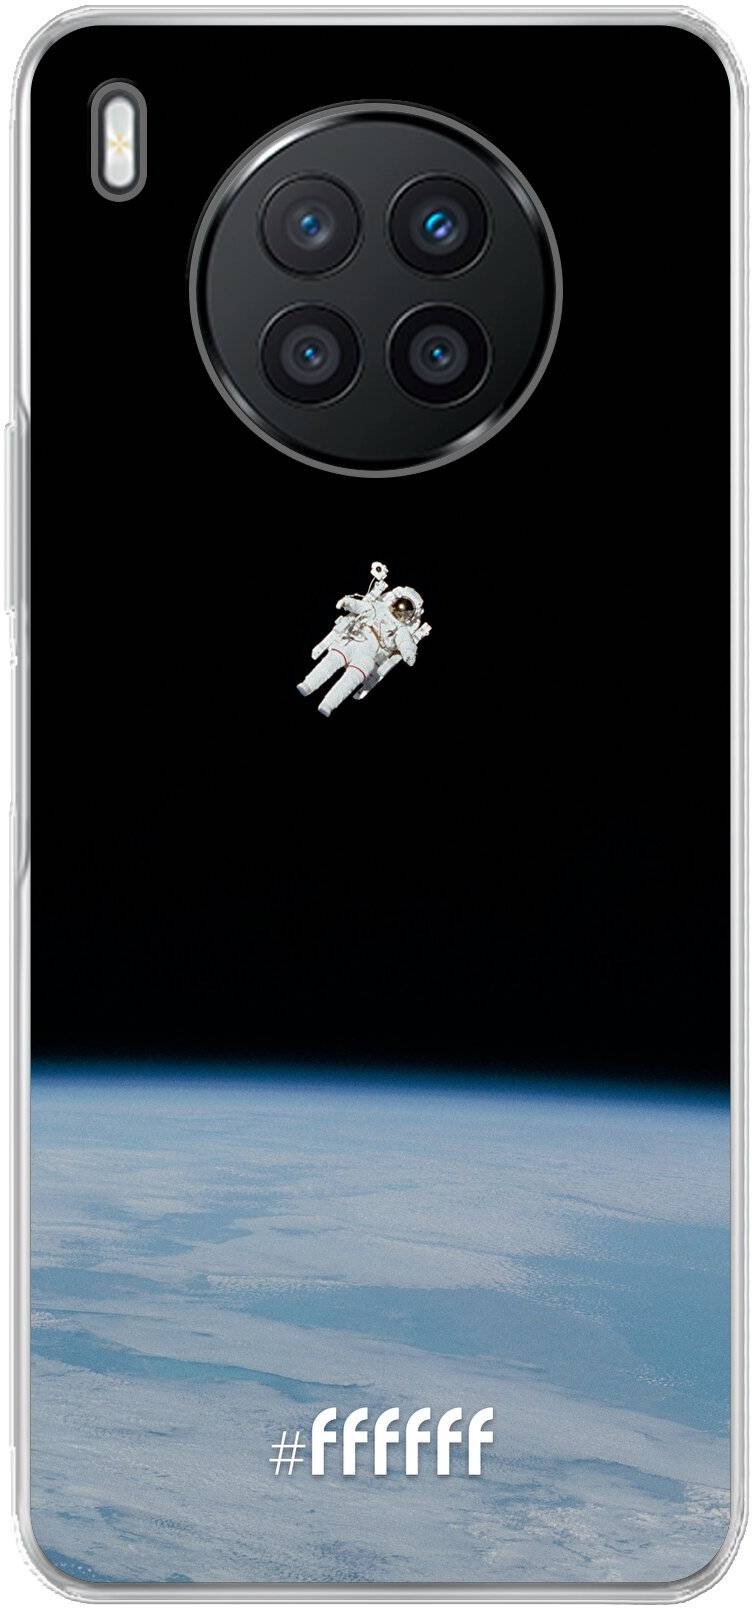 Spacewalk Nova 8i